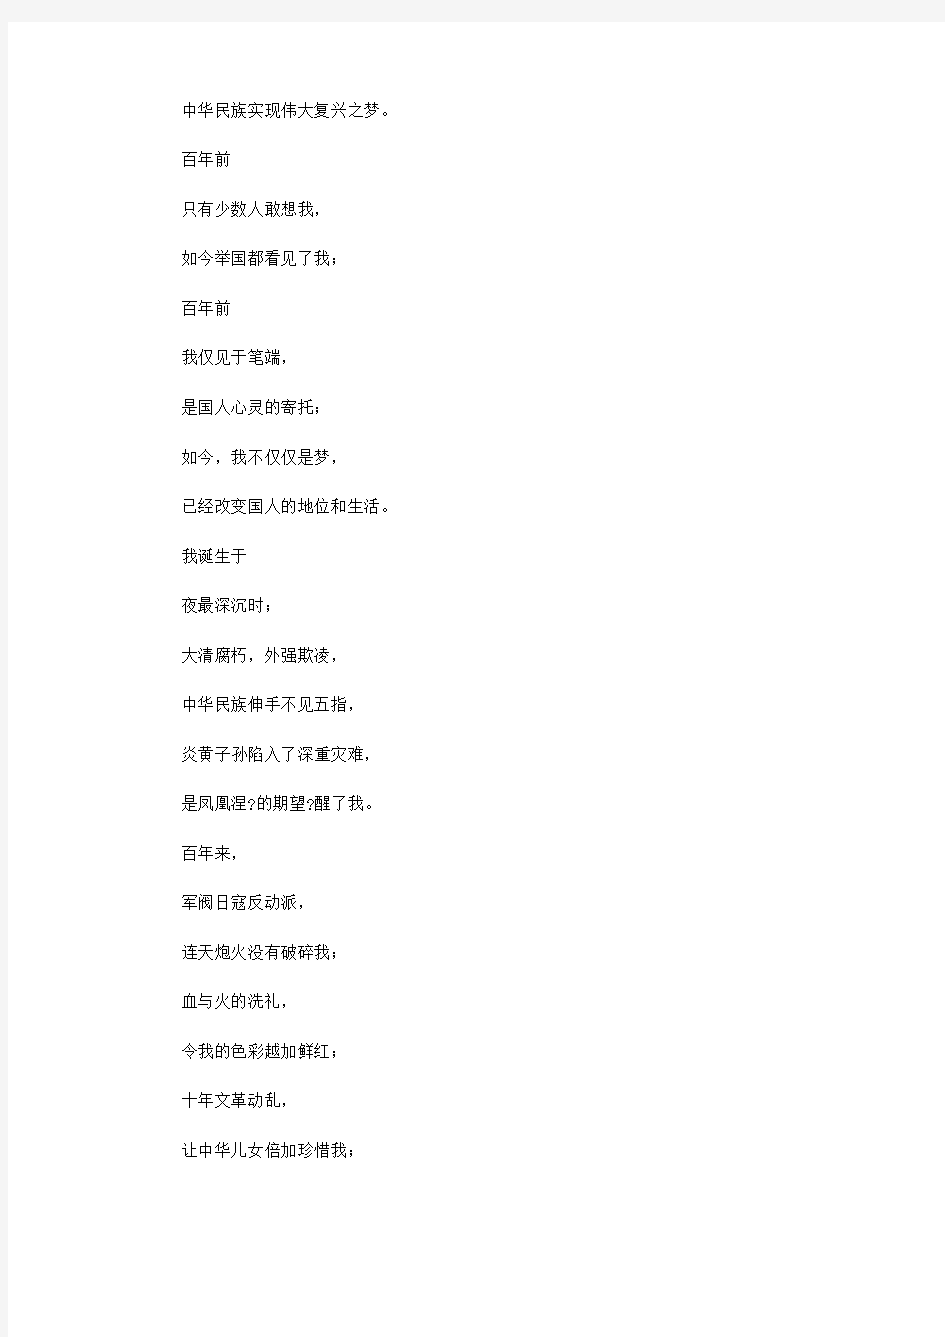 以中国梦为主题的诗歌 赞扬中国梦的诗歌 歌颂中国梦现代诗(28首)